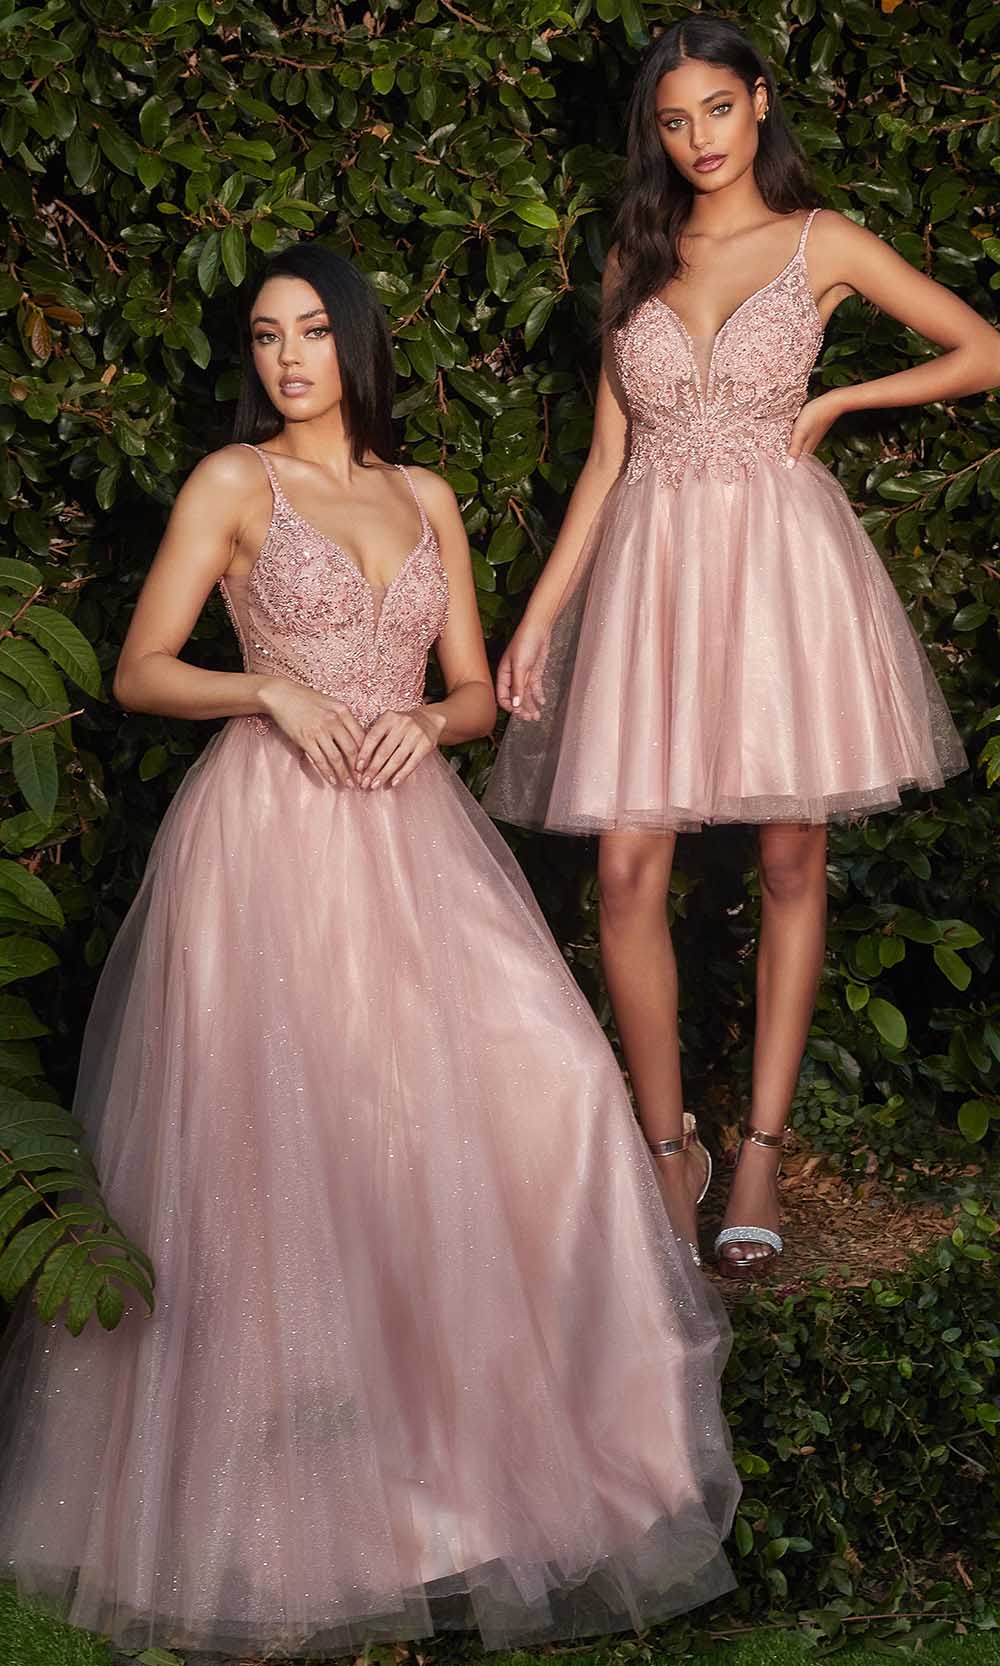 Cinderella Divine CD0190 In Pinkgrade 8 grad dresses, graduation dresses